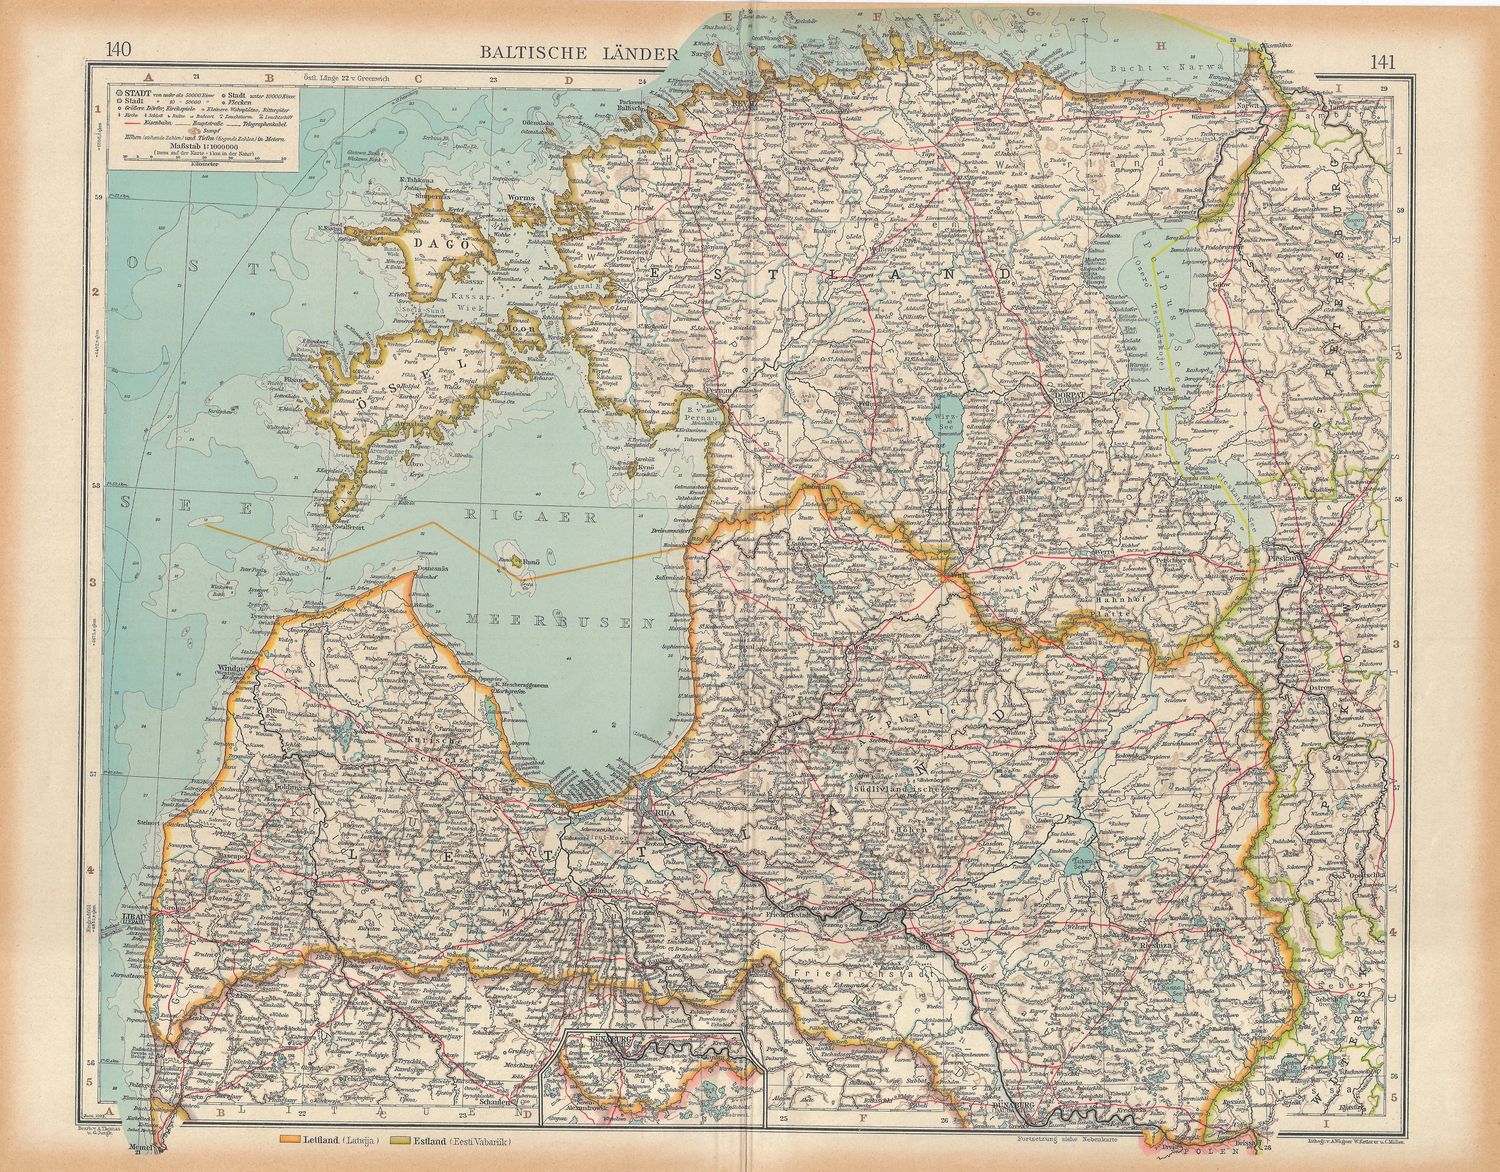 1923 Map of Baltics: Estonia, Latvia, Lithuania